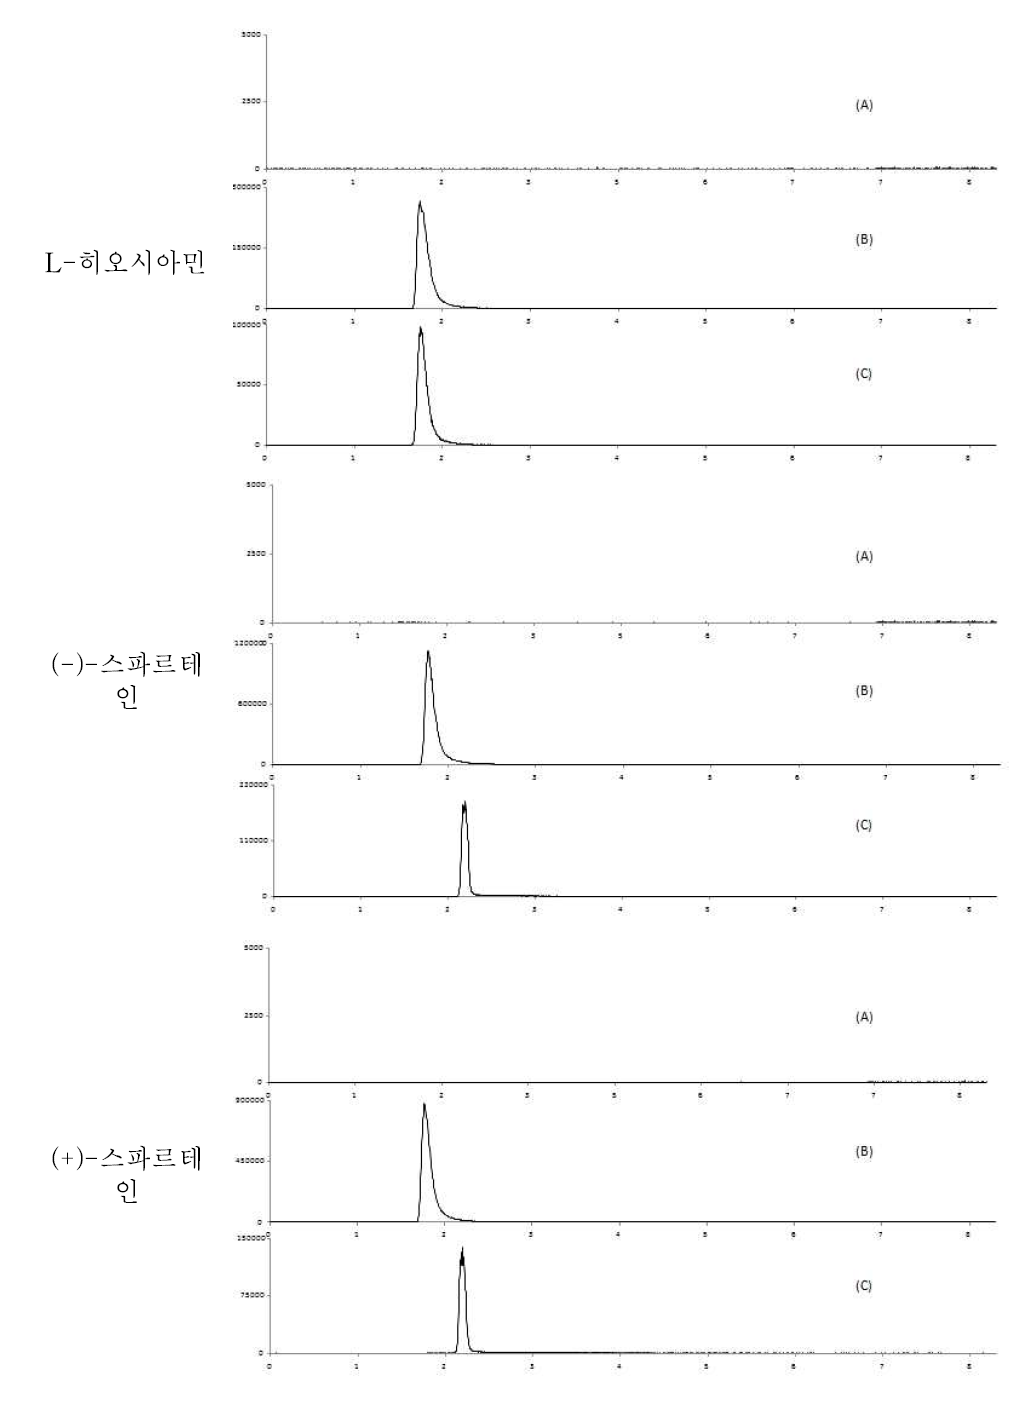 넙치 중특이성 : blank (A), standard solution (B) spiked sample(C)